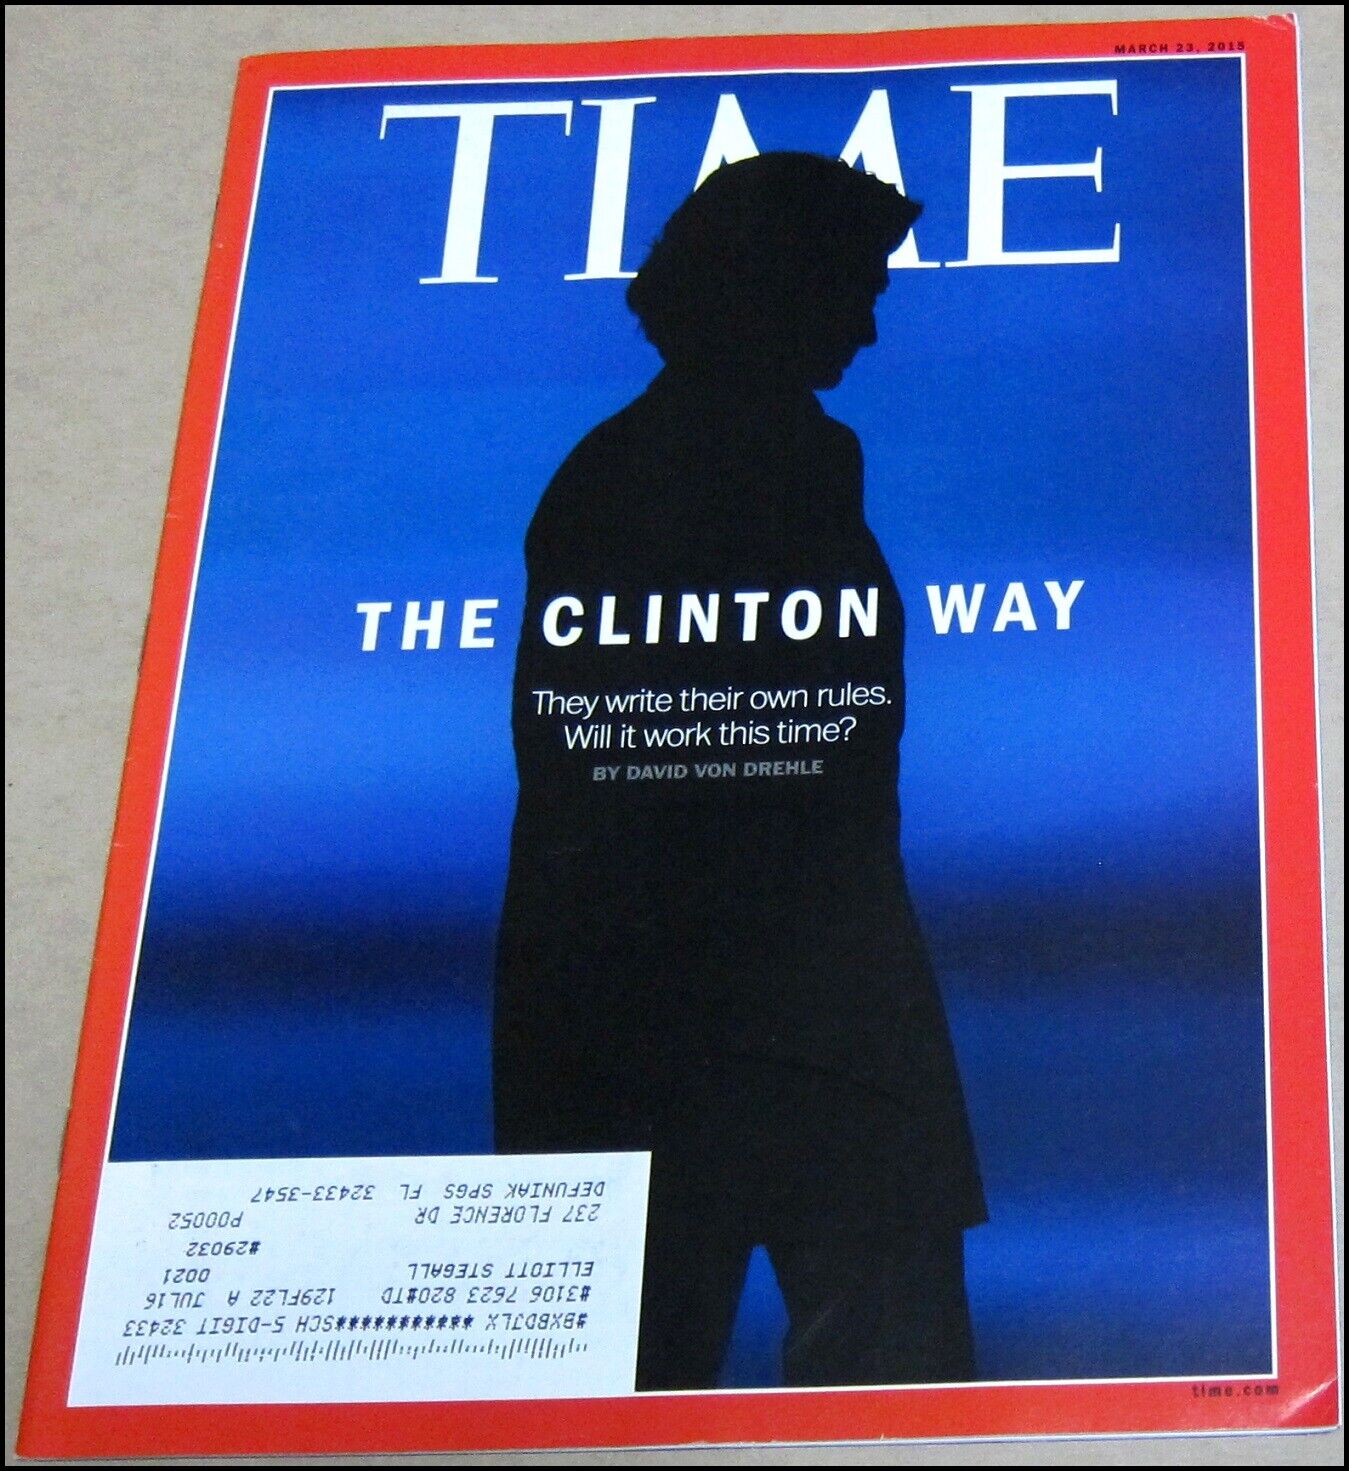 3/23/2015 Time Magazine Hillary Clinton The Clinton Way Boris Nemtsov Drake